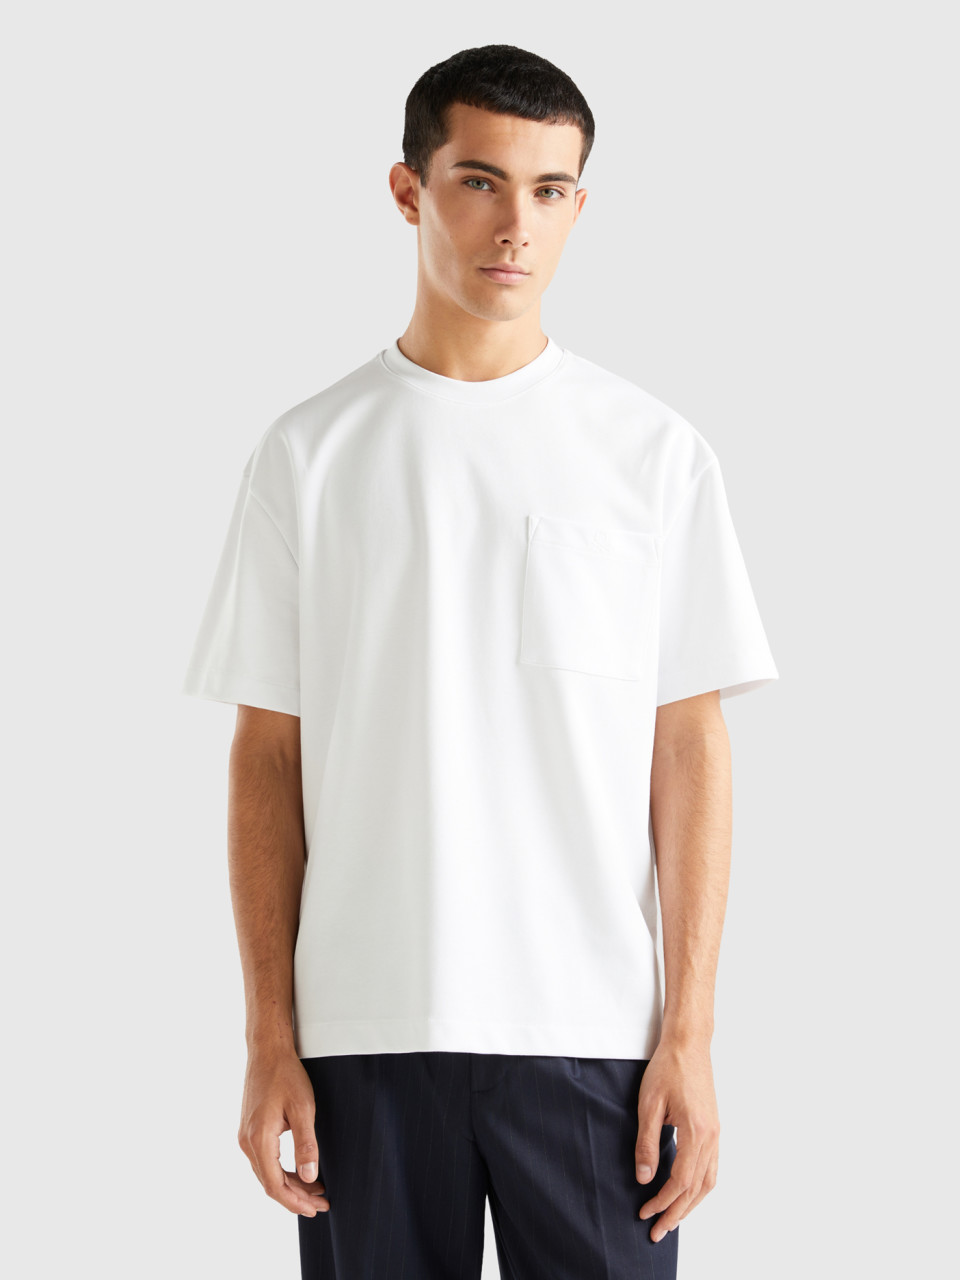 Benetton, Oversized T-shirt With Pocket, White, Men